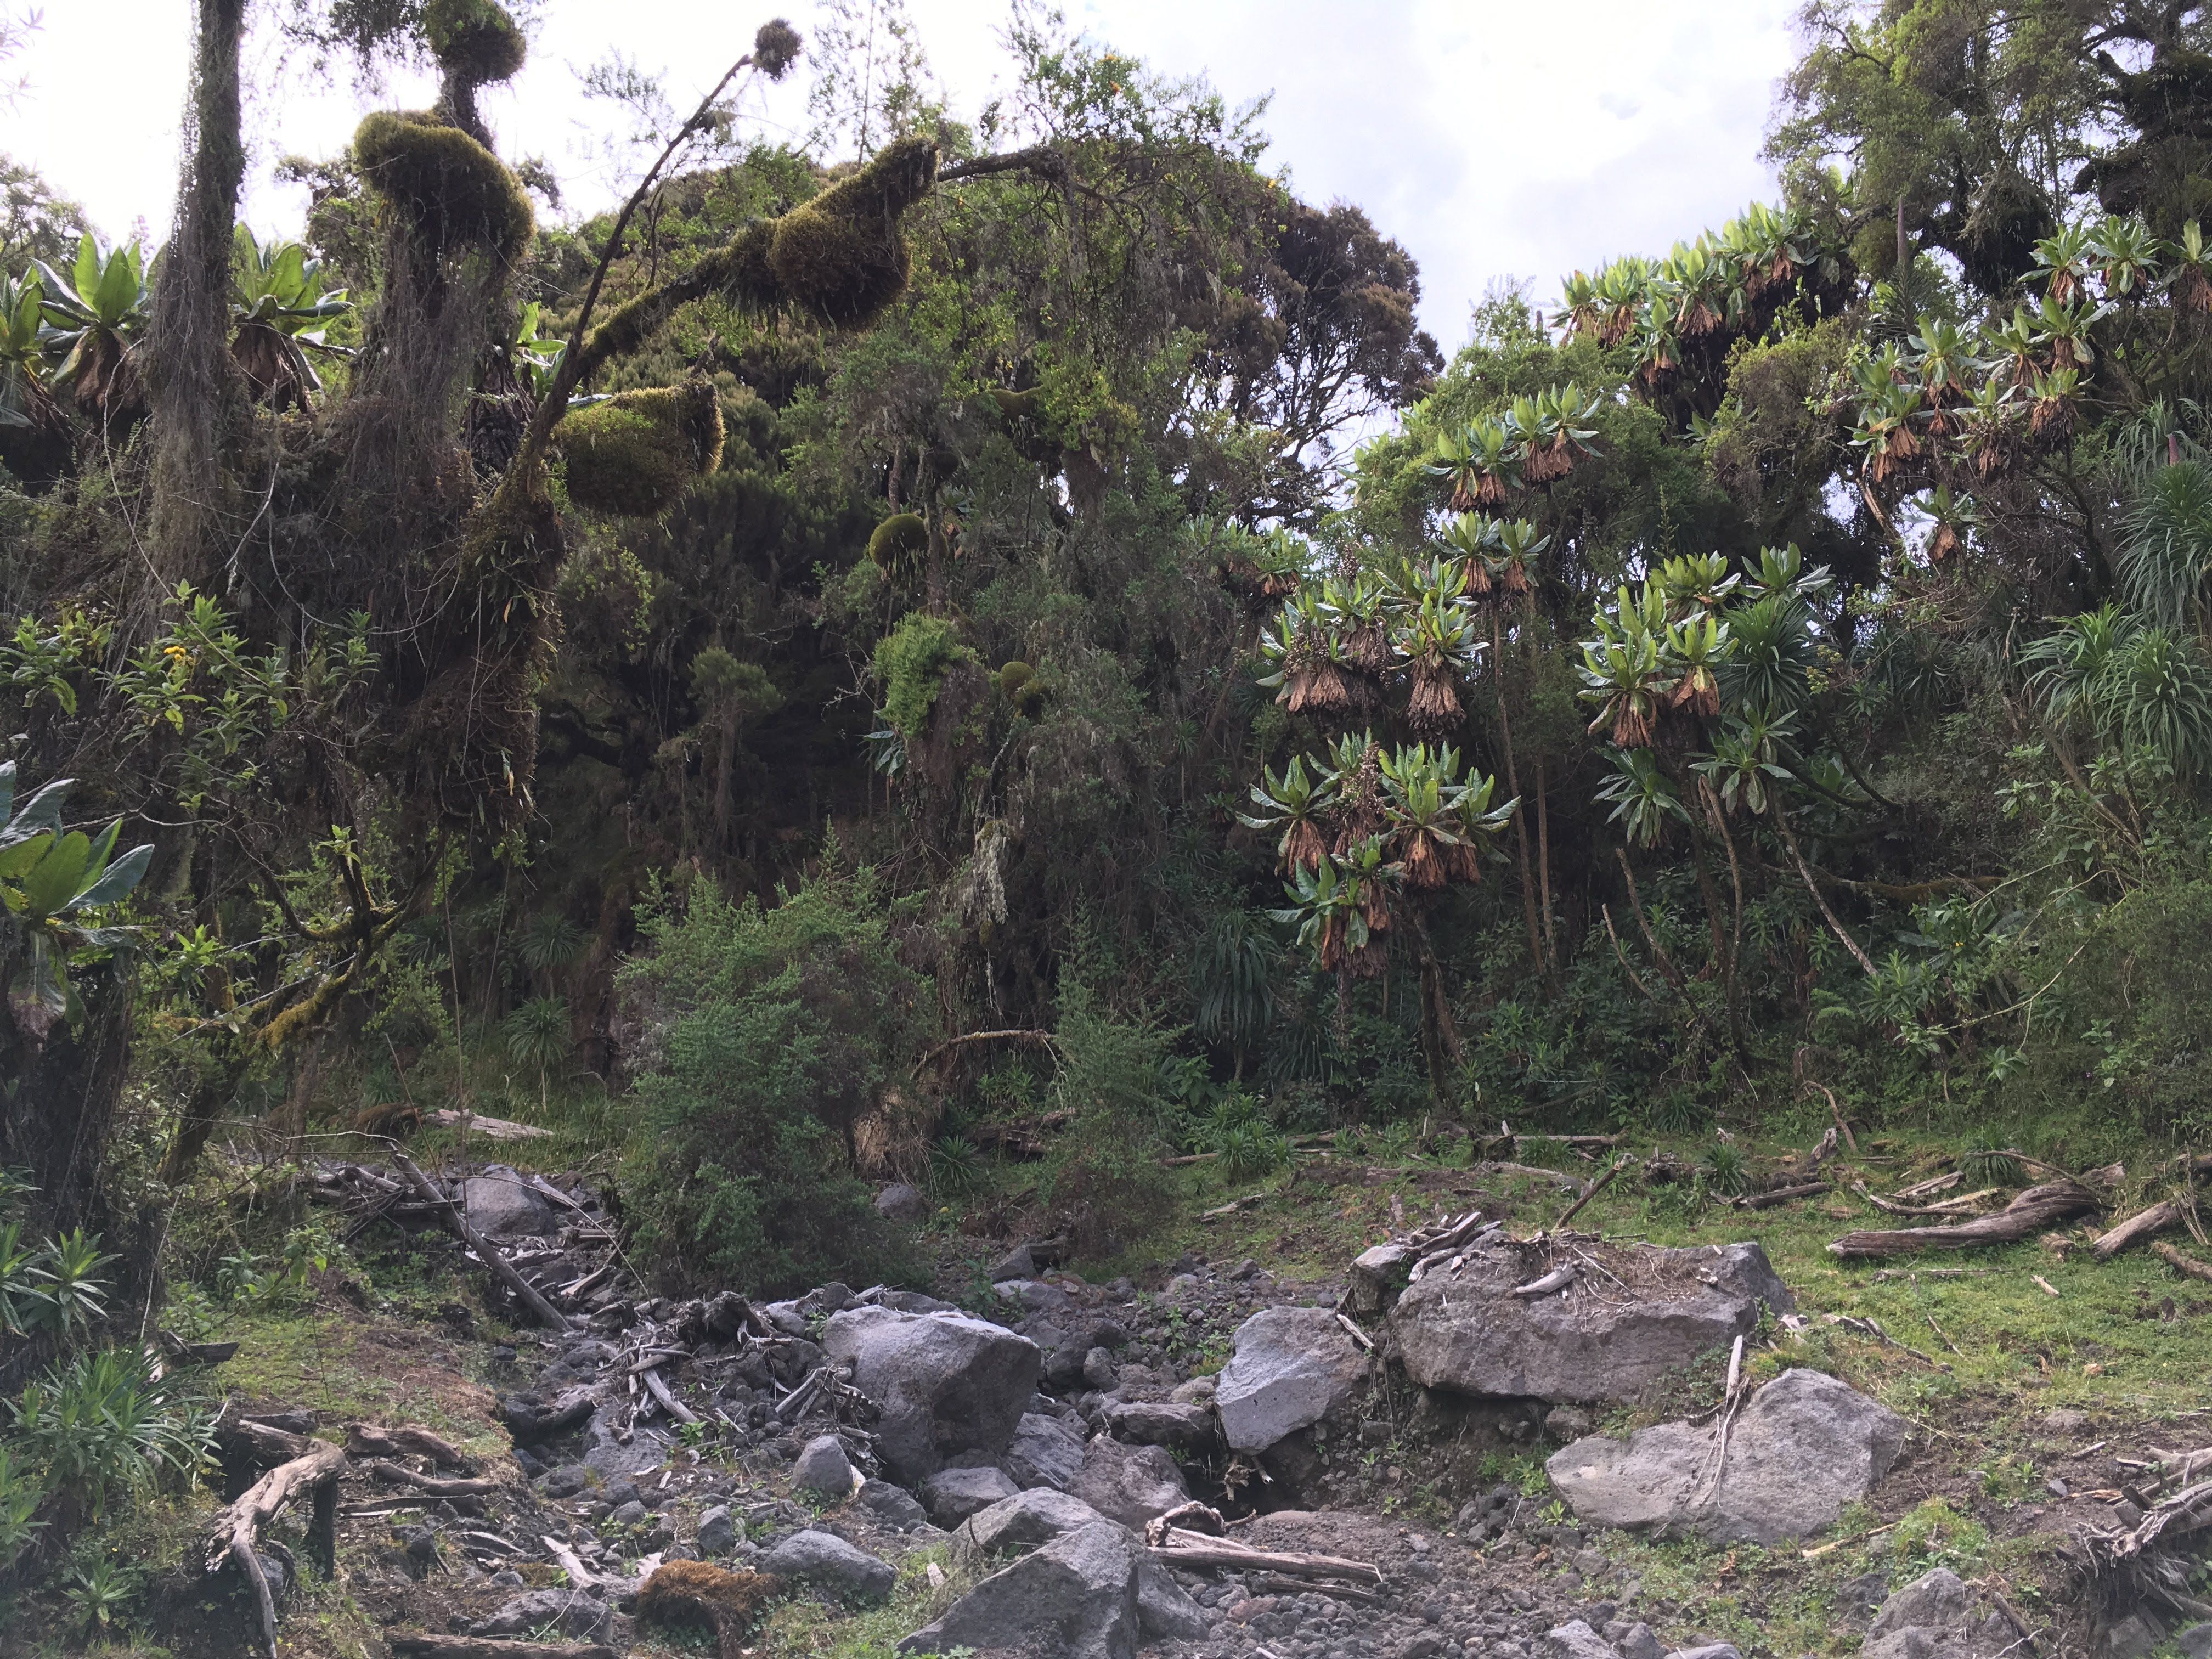 Gorillas Natural habitat at 3000 meters of altitude